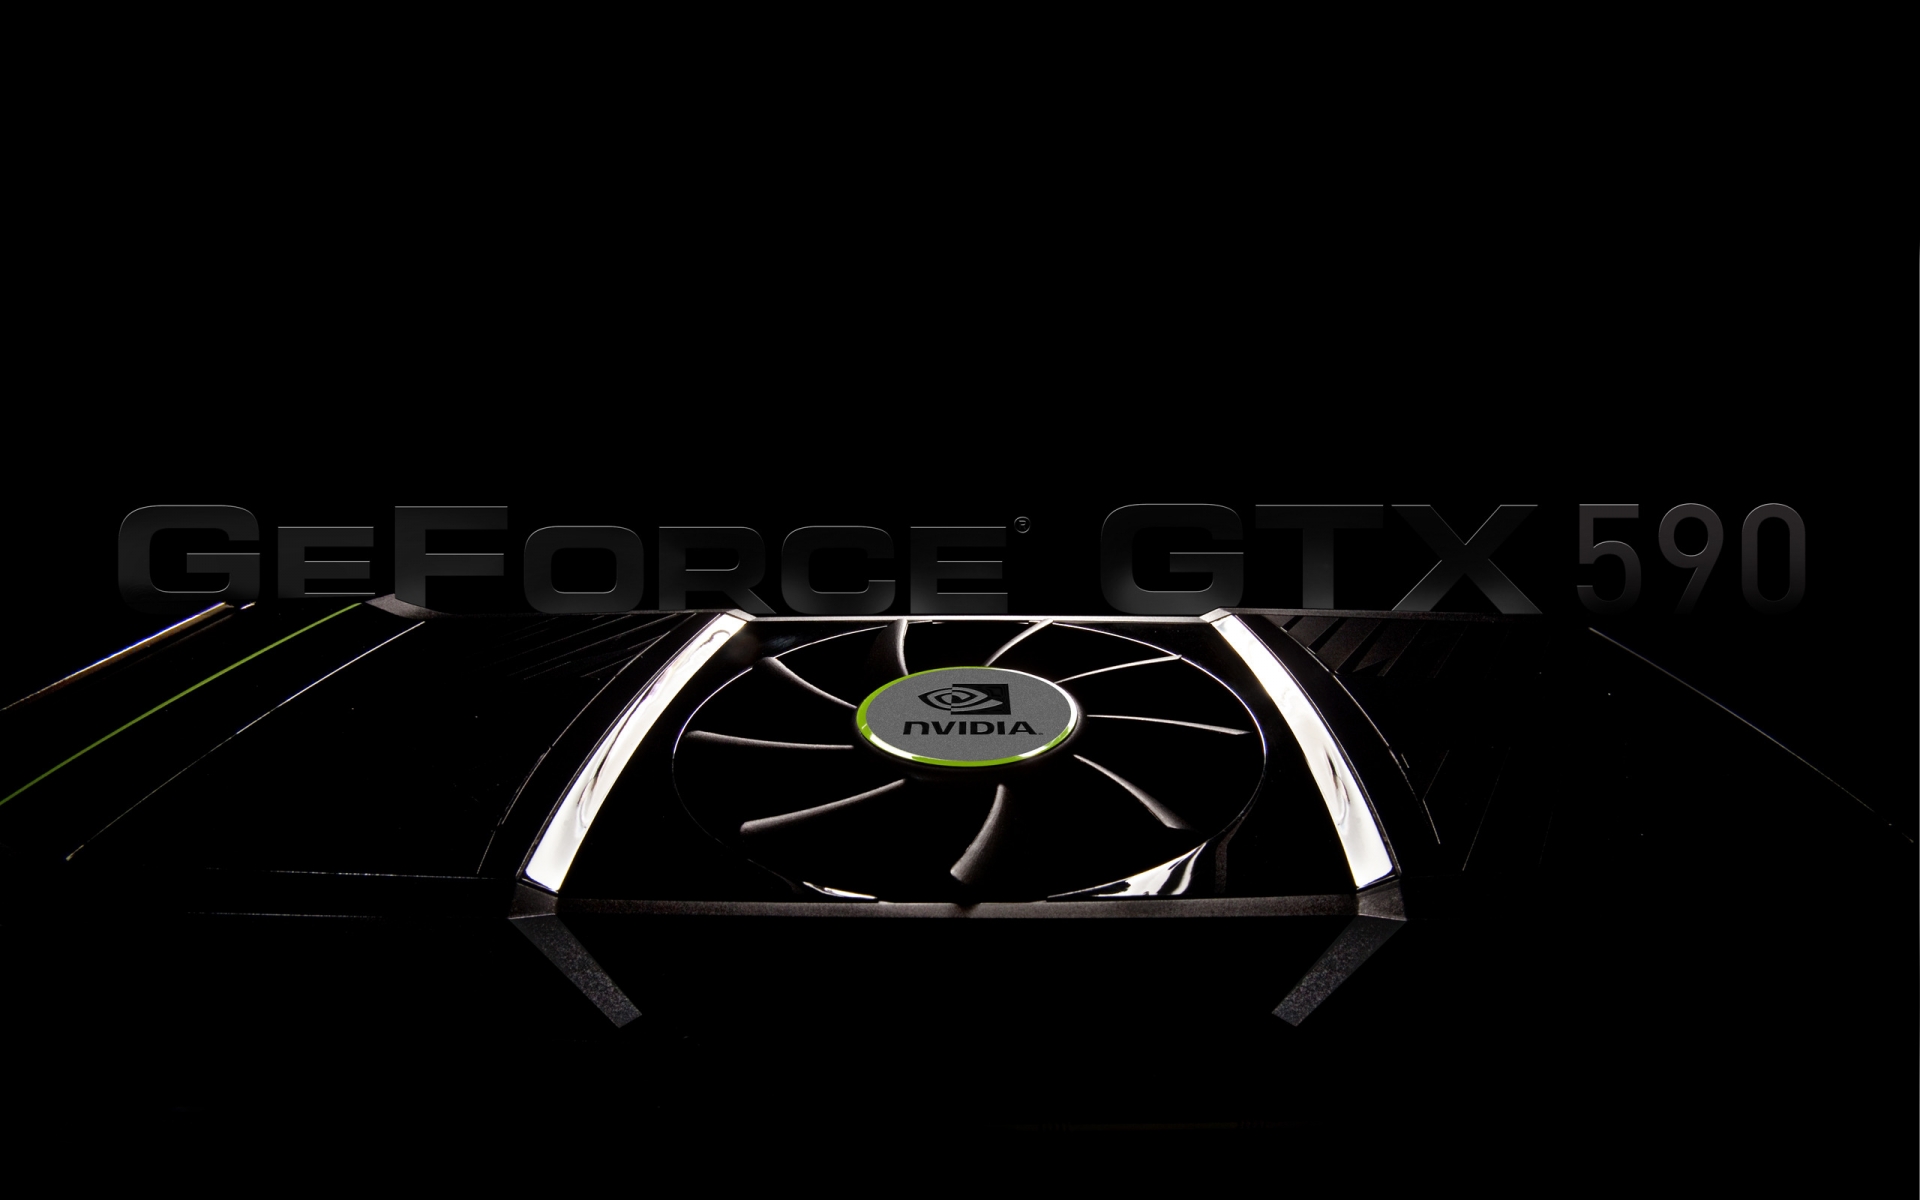 GeForce GTX 590 for 1920 x 1200 widescreen resolution